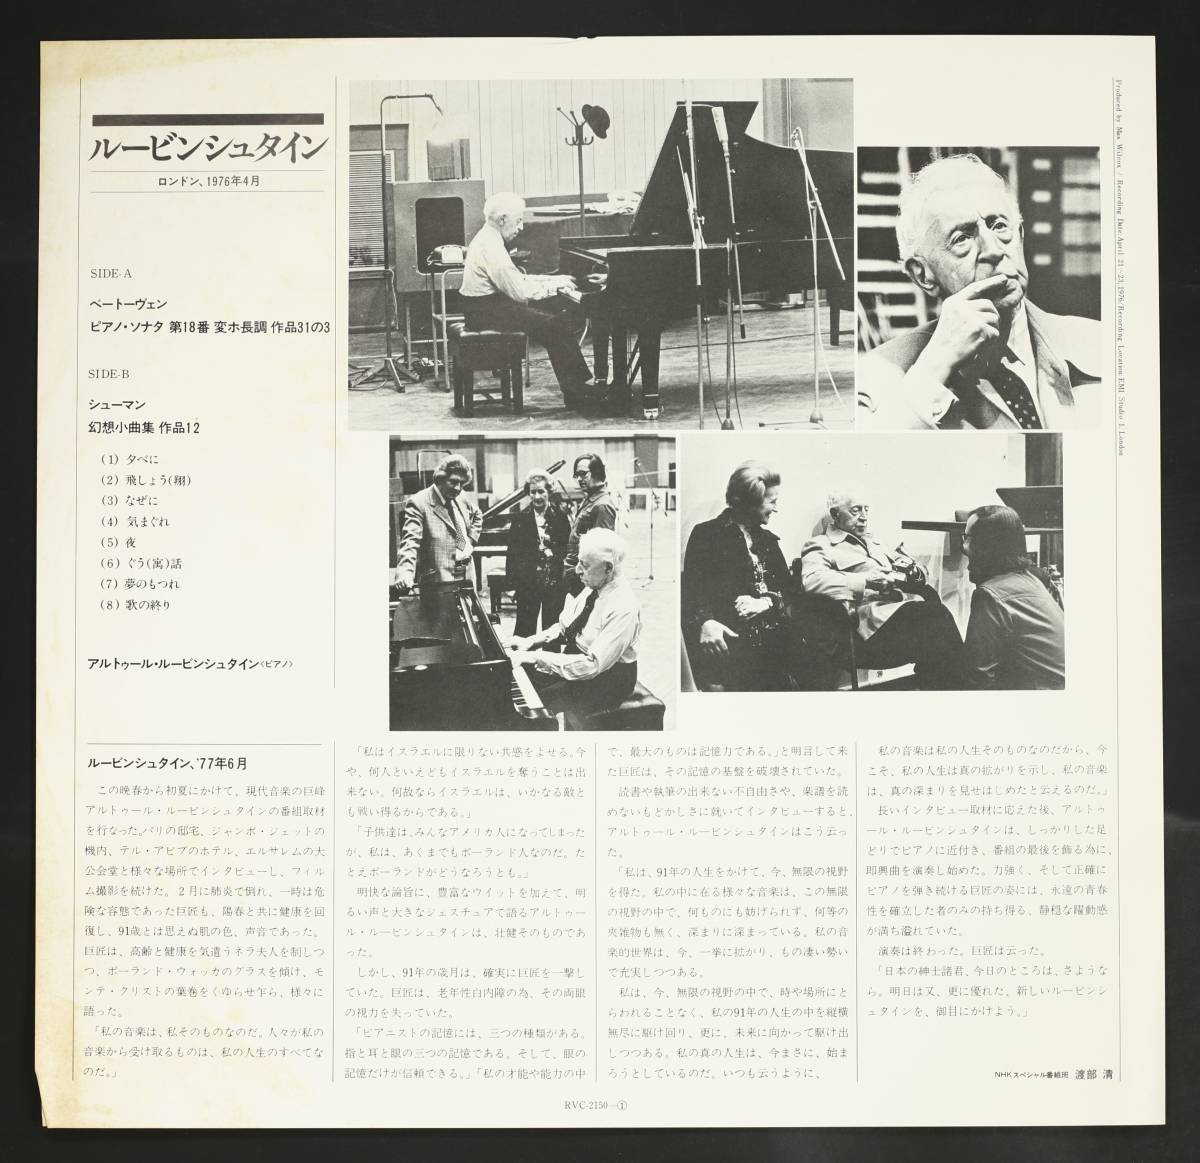 【帯付LP】ルービンシュタイン/ロンドン、1976年4月(並良品,引退直前録音,Artur Rubinstein)_画像3